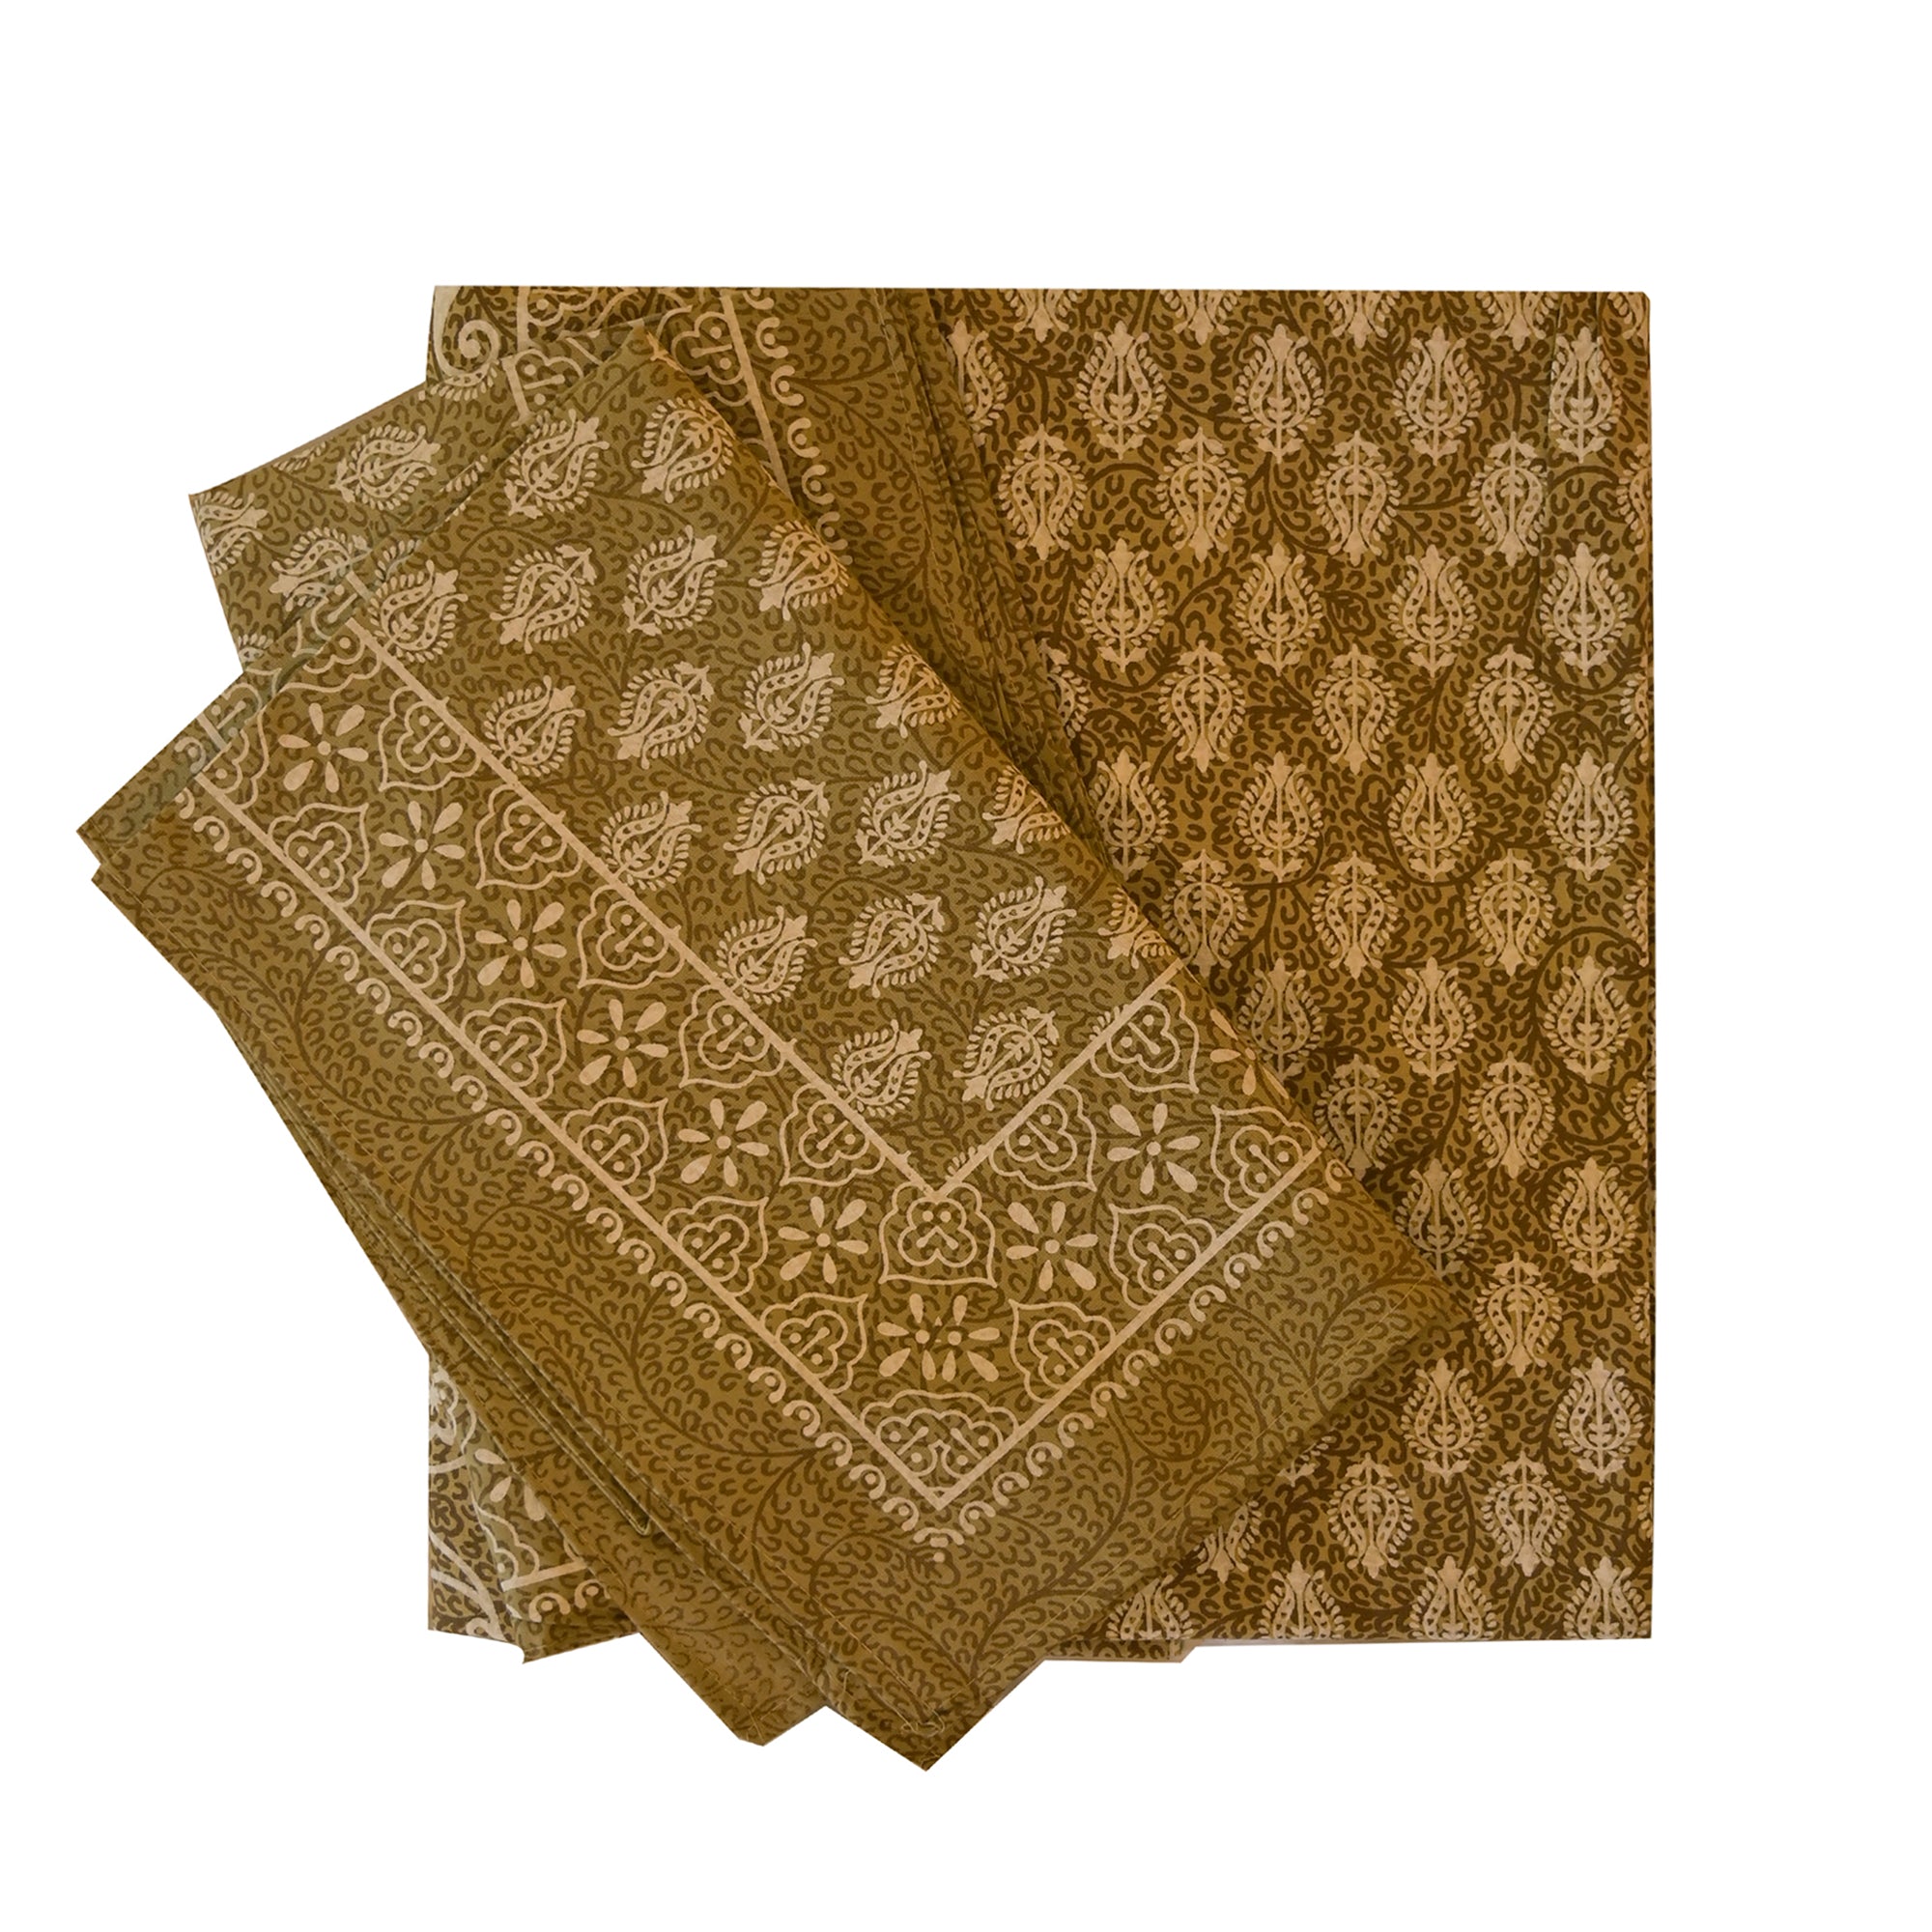 Jaipuri Cotton Printed Bedsheet